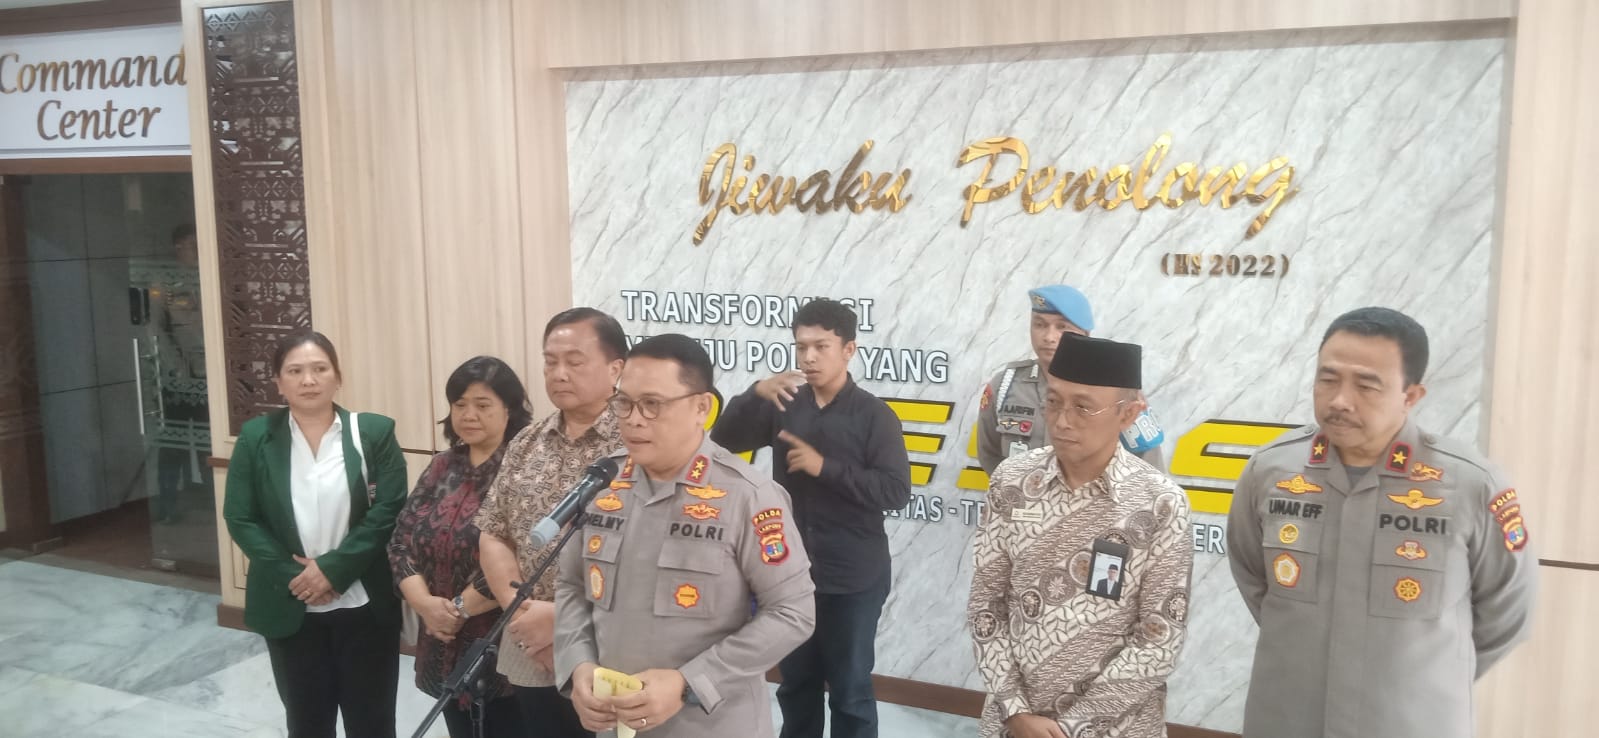 Soal Siswa SPN yang Meninggal, Kapolda Lampung Tegaskan Tak Ada yang Melarang Melihat Kondisi Jenazah